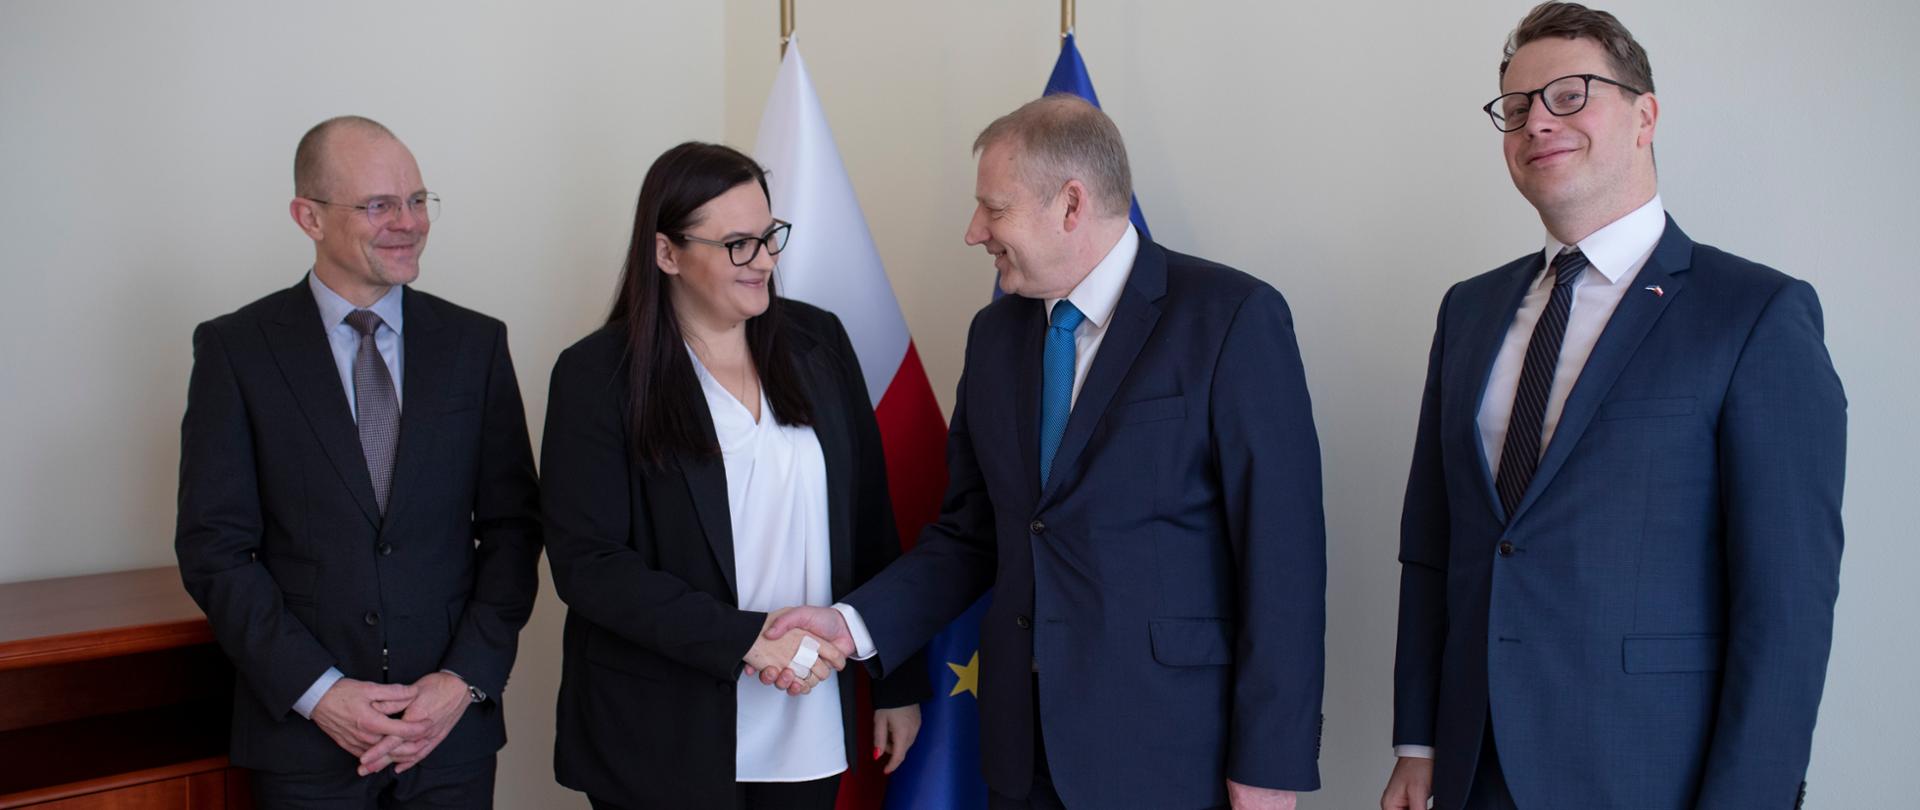 Na zdjęciu stoją cztery osoby - trzech mężczyzn i kobieta. Minister Jarosińska podaje rękę Rainerowi Saks, sekretarzowi generalnemu Ministerstwa Spraw Zagranicznych Estonii.